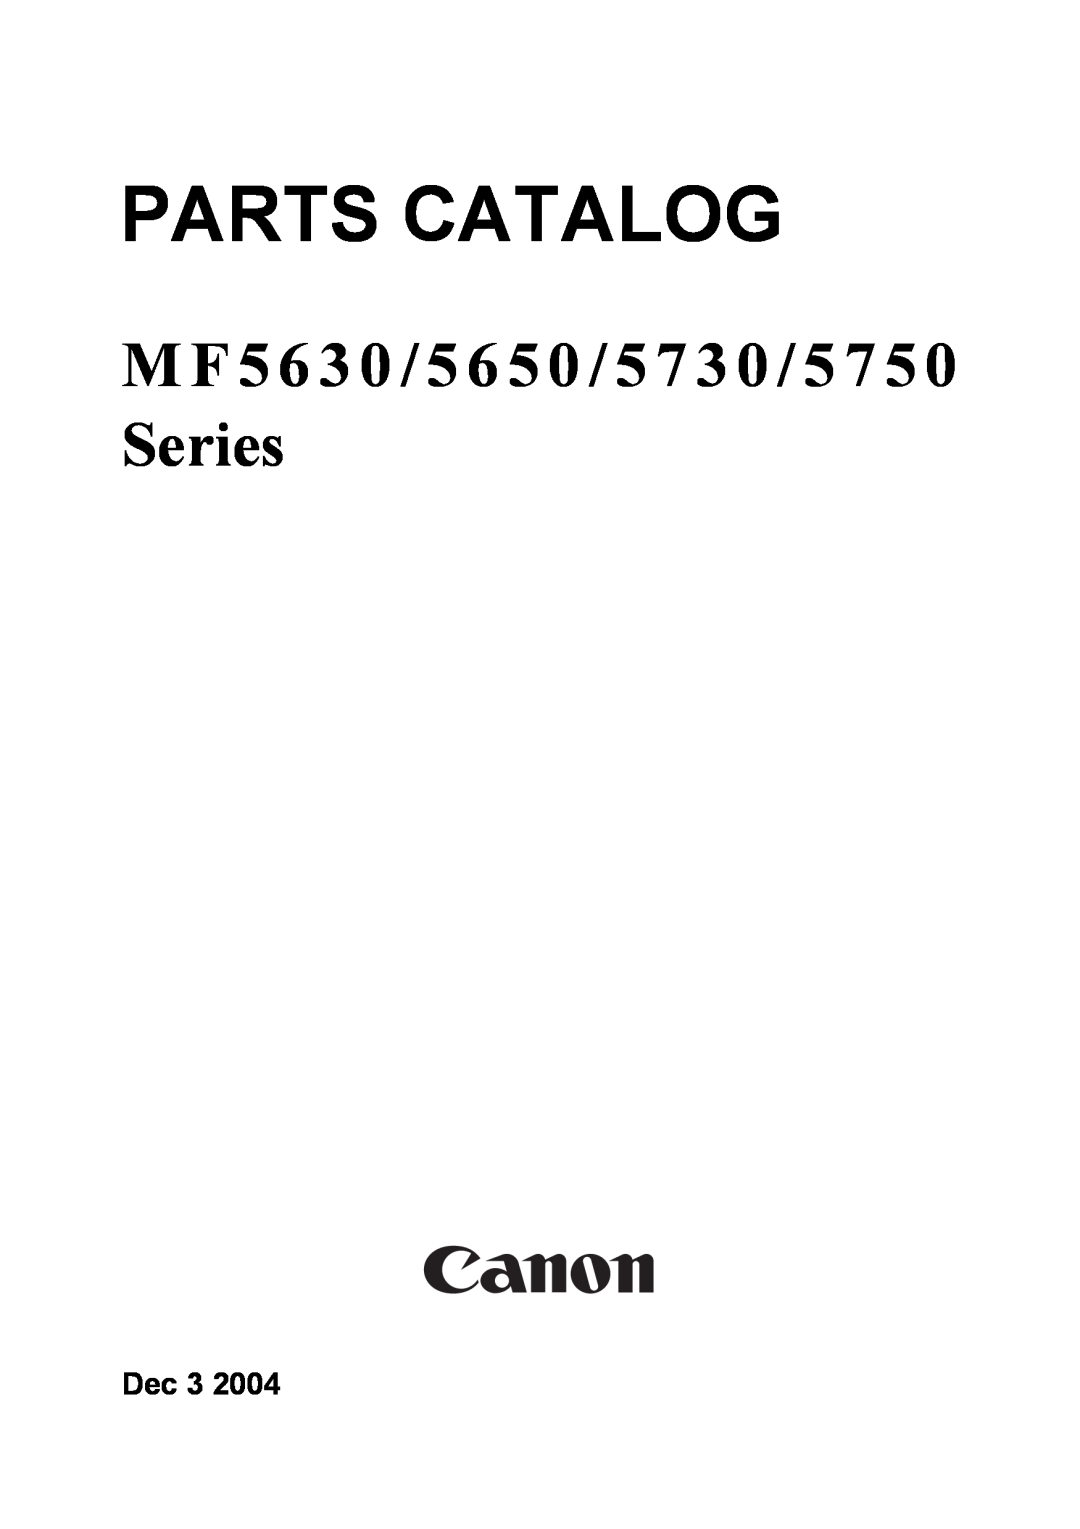 Canon 5730, MF5630, 5650, 5750 manual Parts Catalog, M F 5 6 3 0 / 5 6 5 0 / 5 7 3 0 / 5 7 5 0 Series, Dec 3 